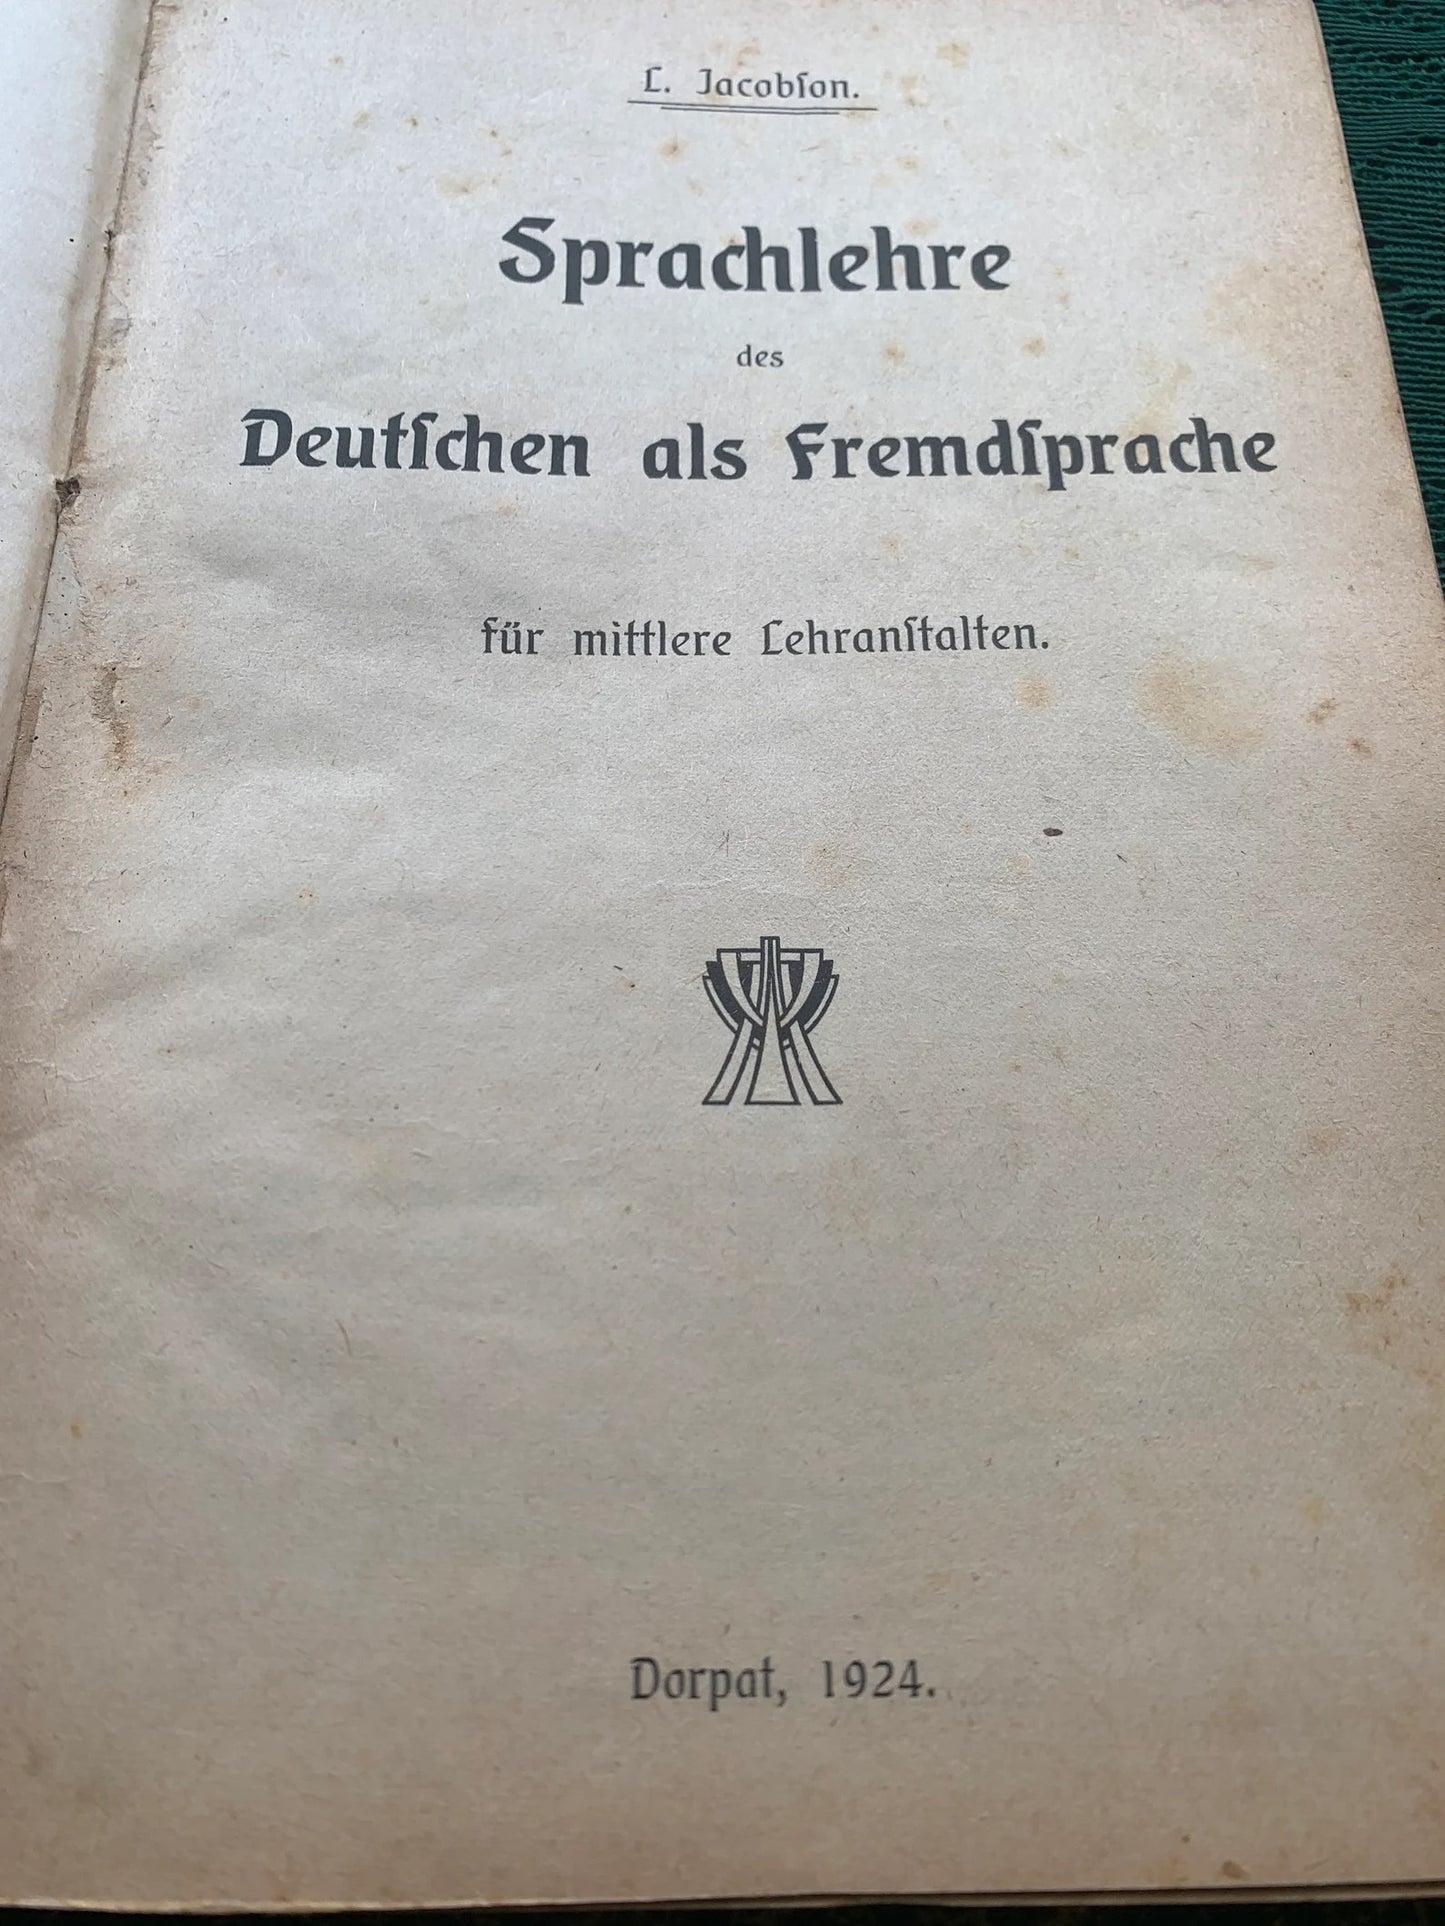 Antique Book from 1924 in German - Sprachlehre des Deutichen als fremdiprache - collectible book